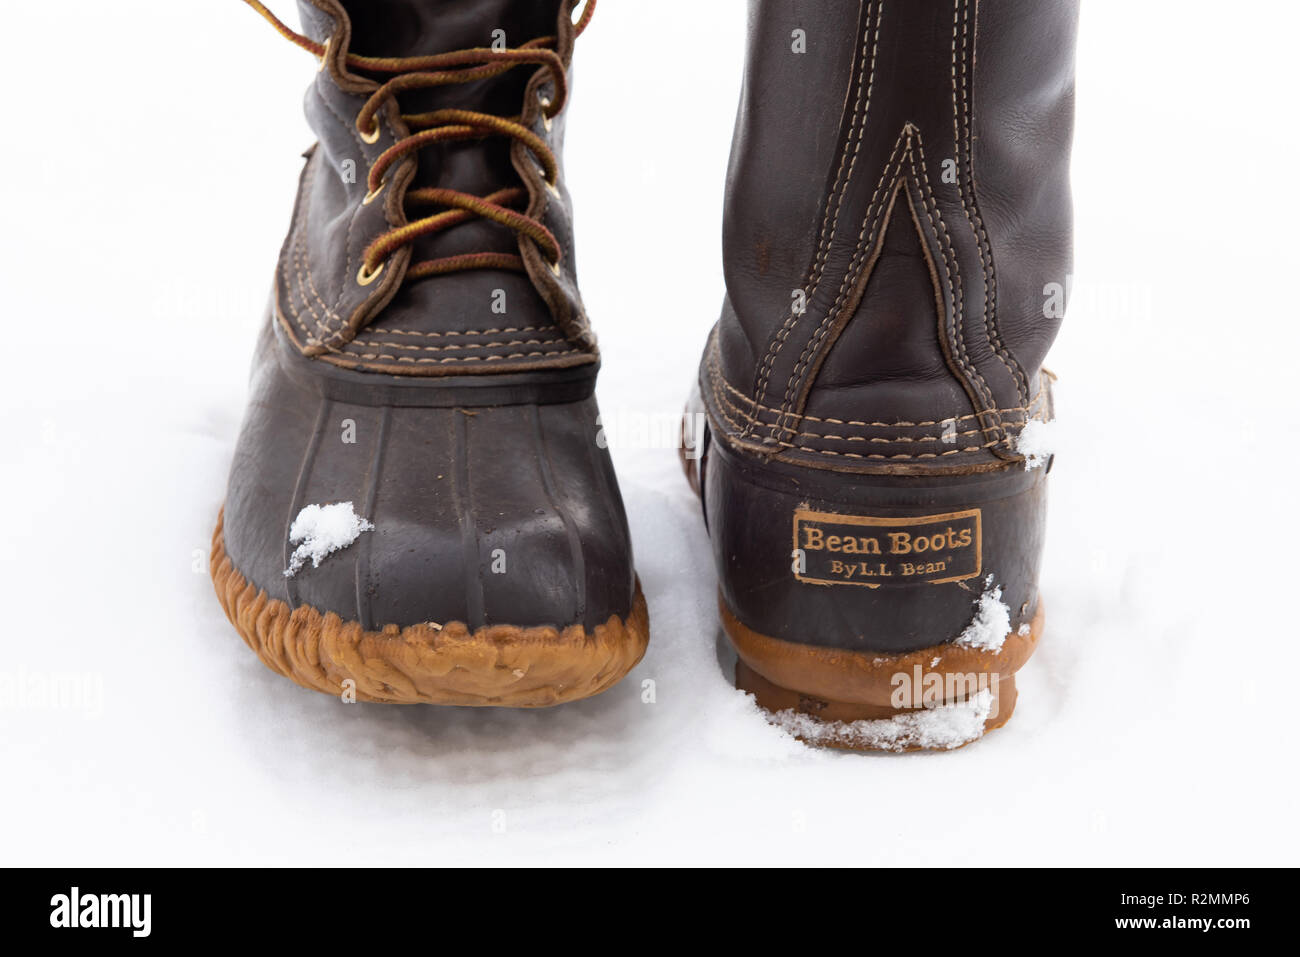 Una coppia di indossato LL Bean boots nella neve, mostrando la pelle e costruzione in gomma e il distintivo della maglia della catena di disegno di battistrada e suola impermeabile. Foto Stock